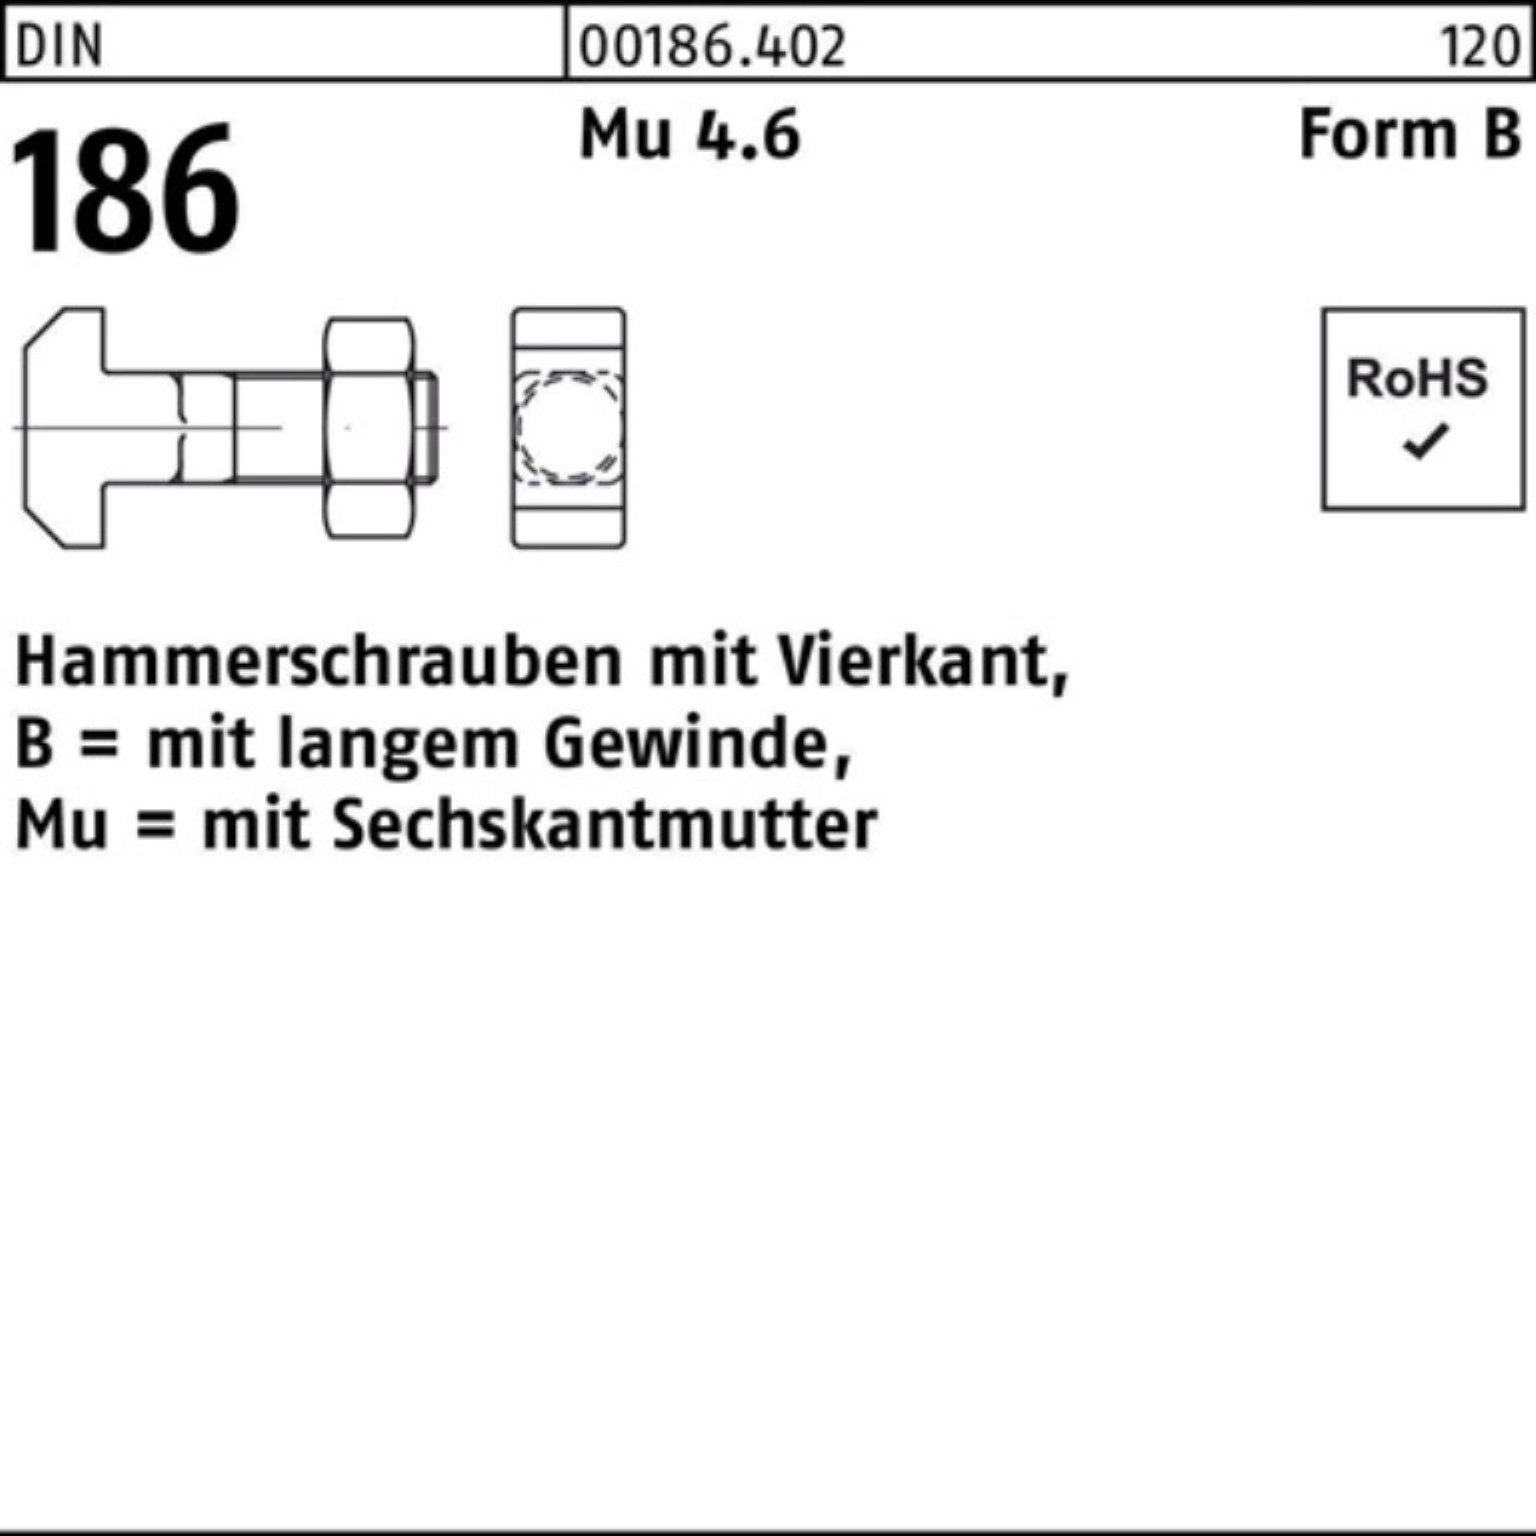 DIN Pack Schraube 20x 186 FormB 100 BM 100er Vierkant Hammerschraube Reyher 6-ktmutter